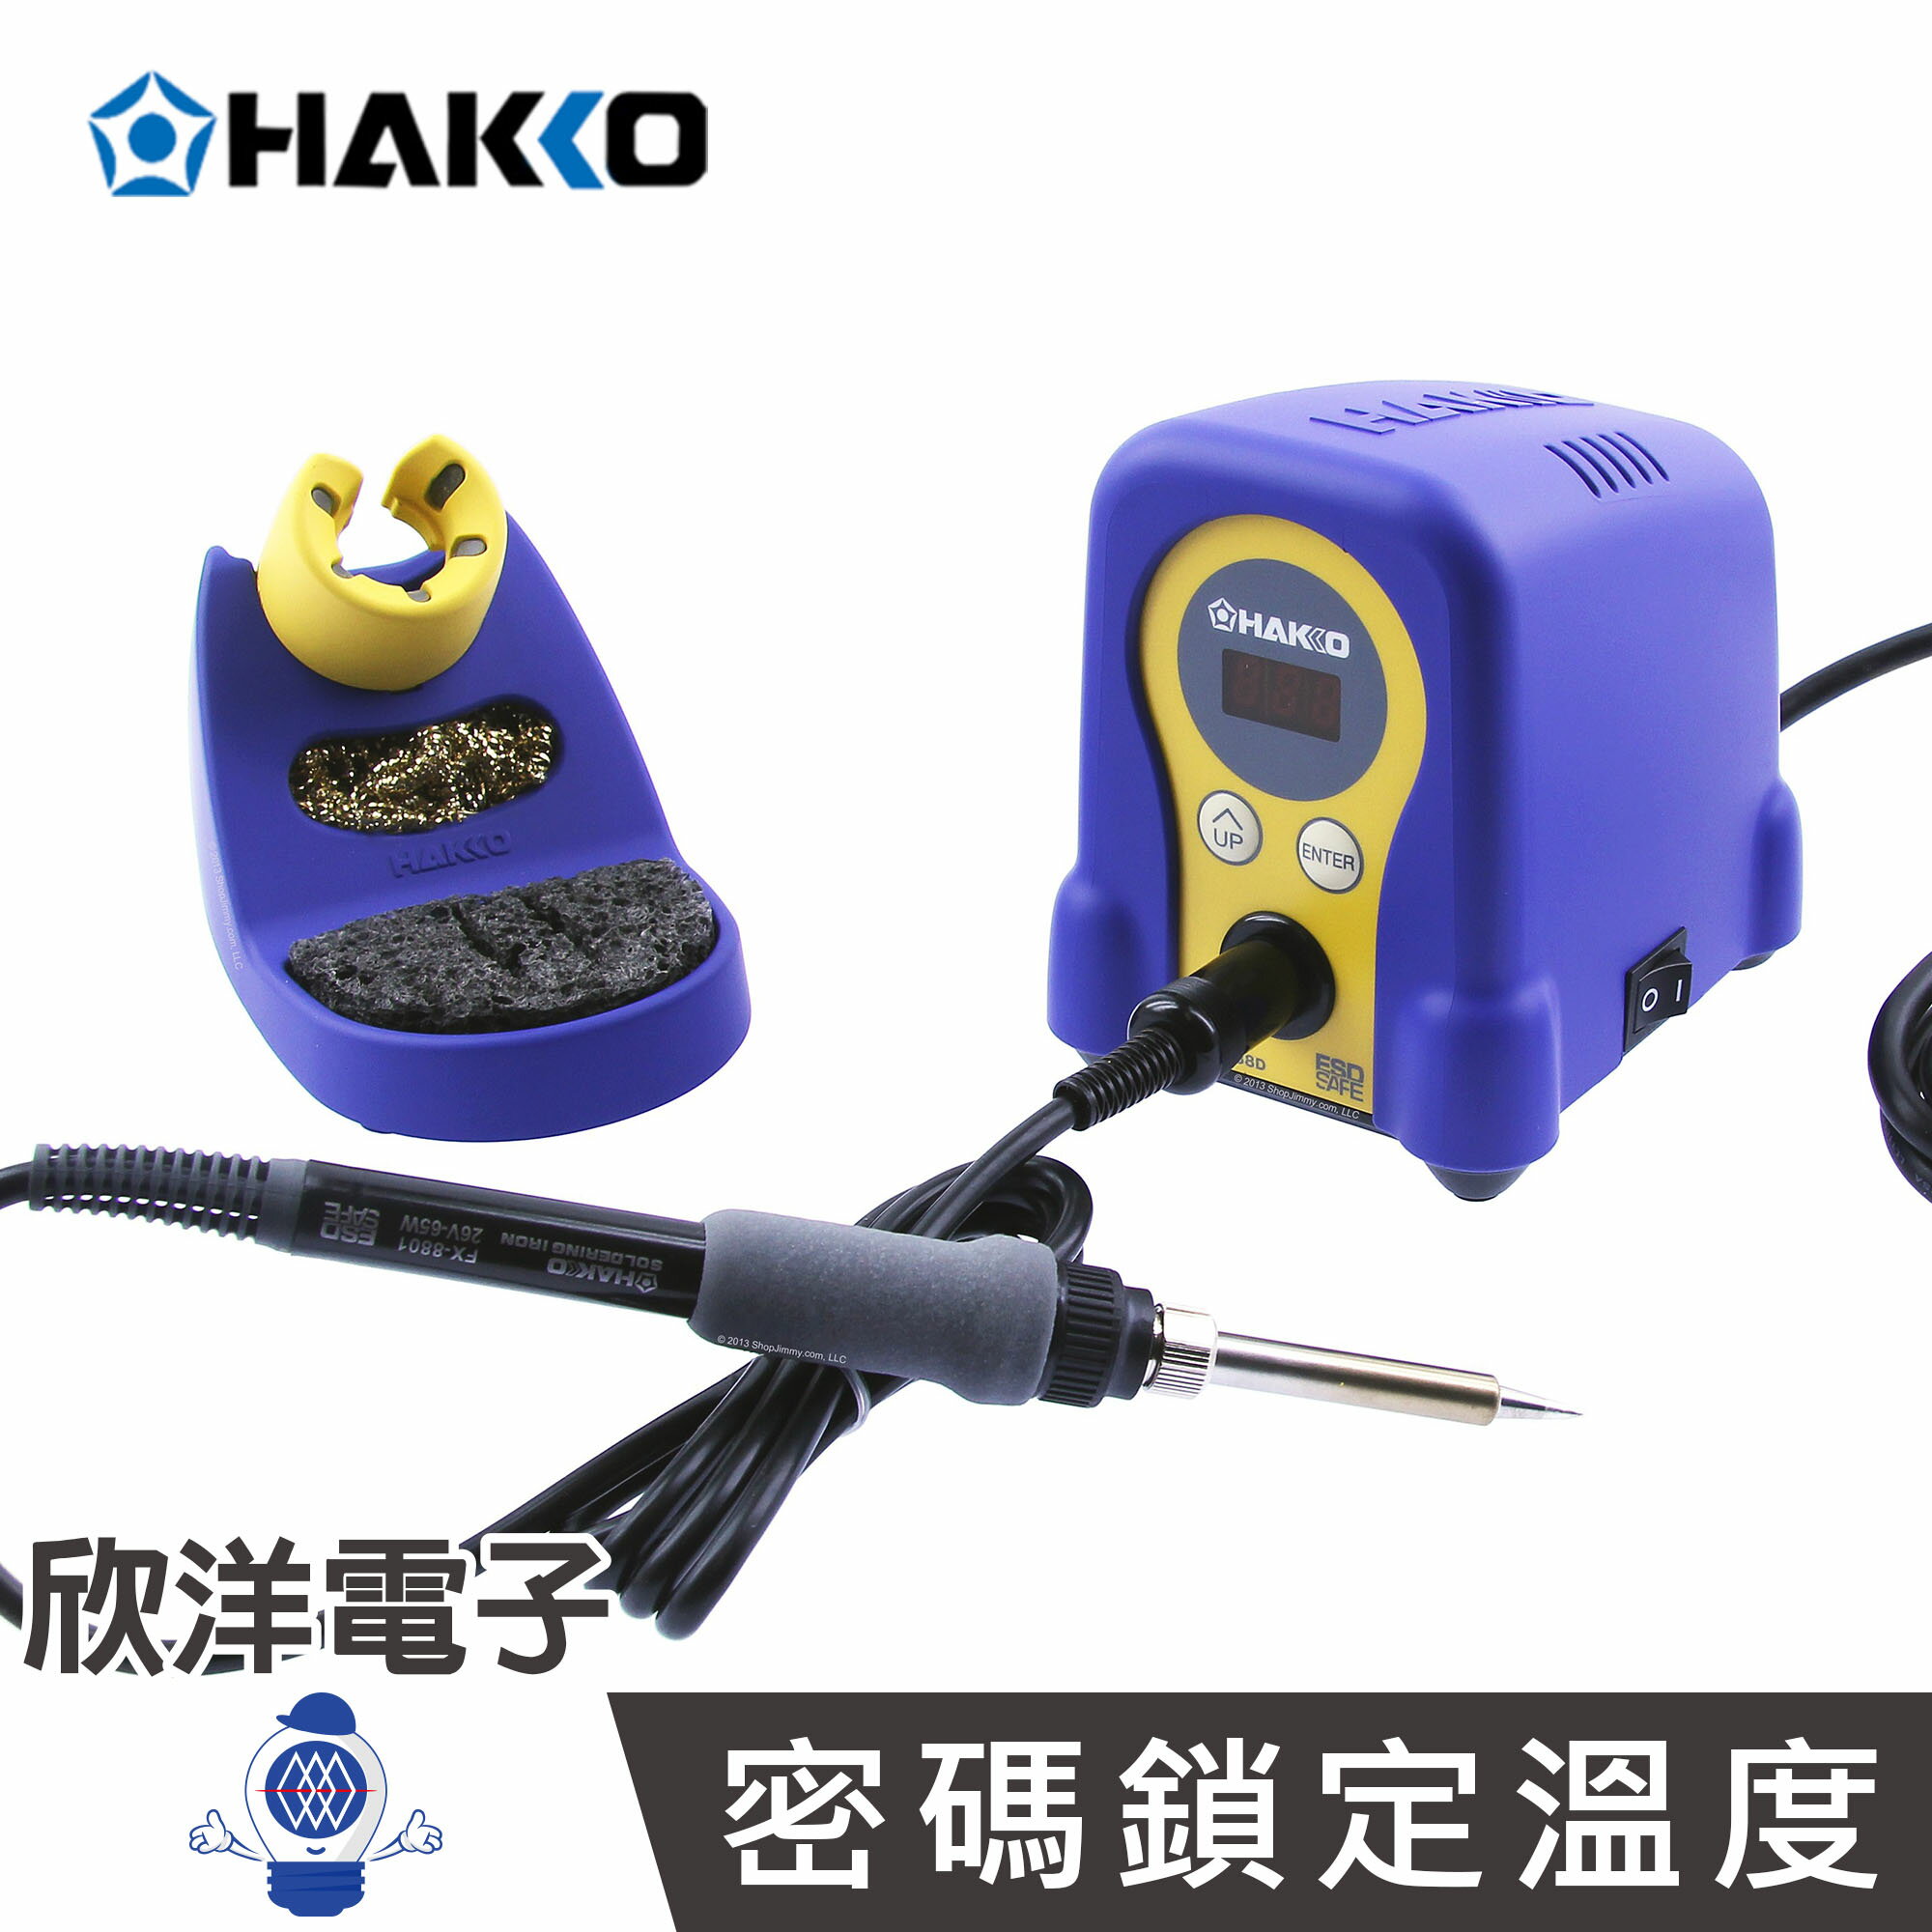 ※ 欣洋電子 ※ HAKKO 日本白光牌 座上型數位顯示防靜電溫控烙鐵組 (FX-888D)